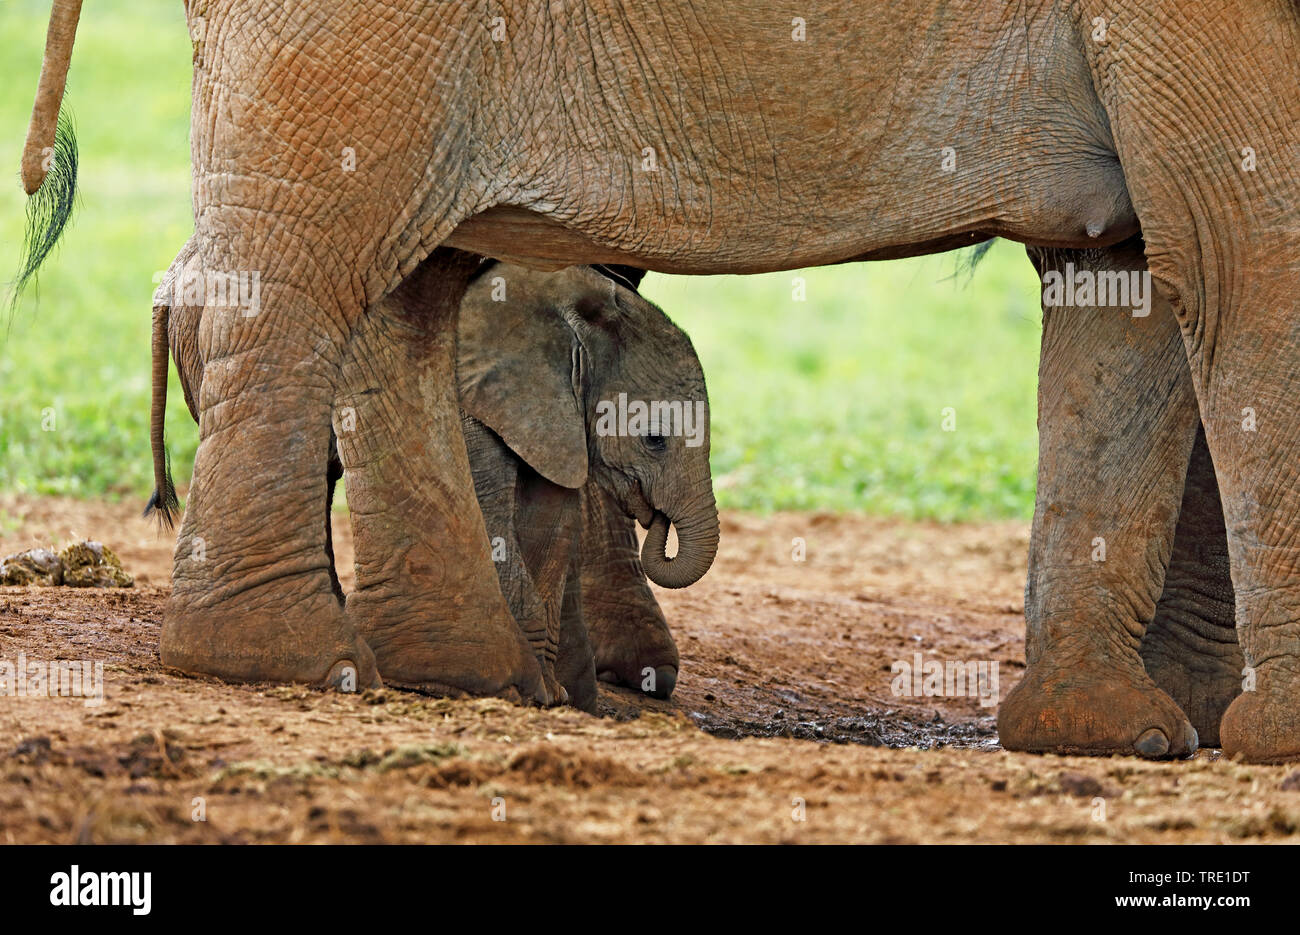 L'éléphant africain (Loxodonta africana), jeune veau sous le ventre de la mère, side view, Afrique du Sud, Eastern Cape, Addo Elephant National Park Banque D'Images